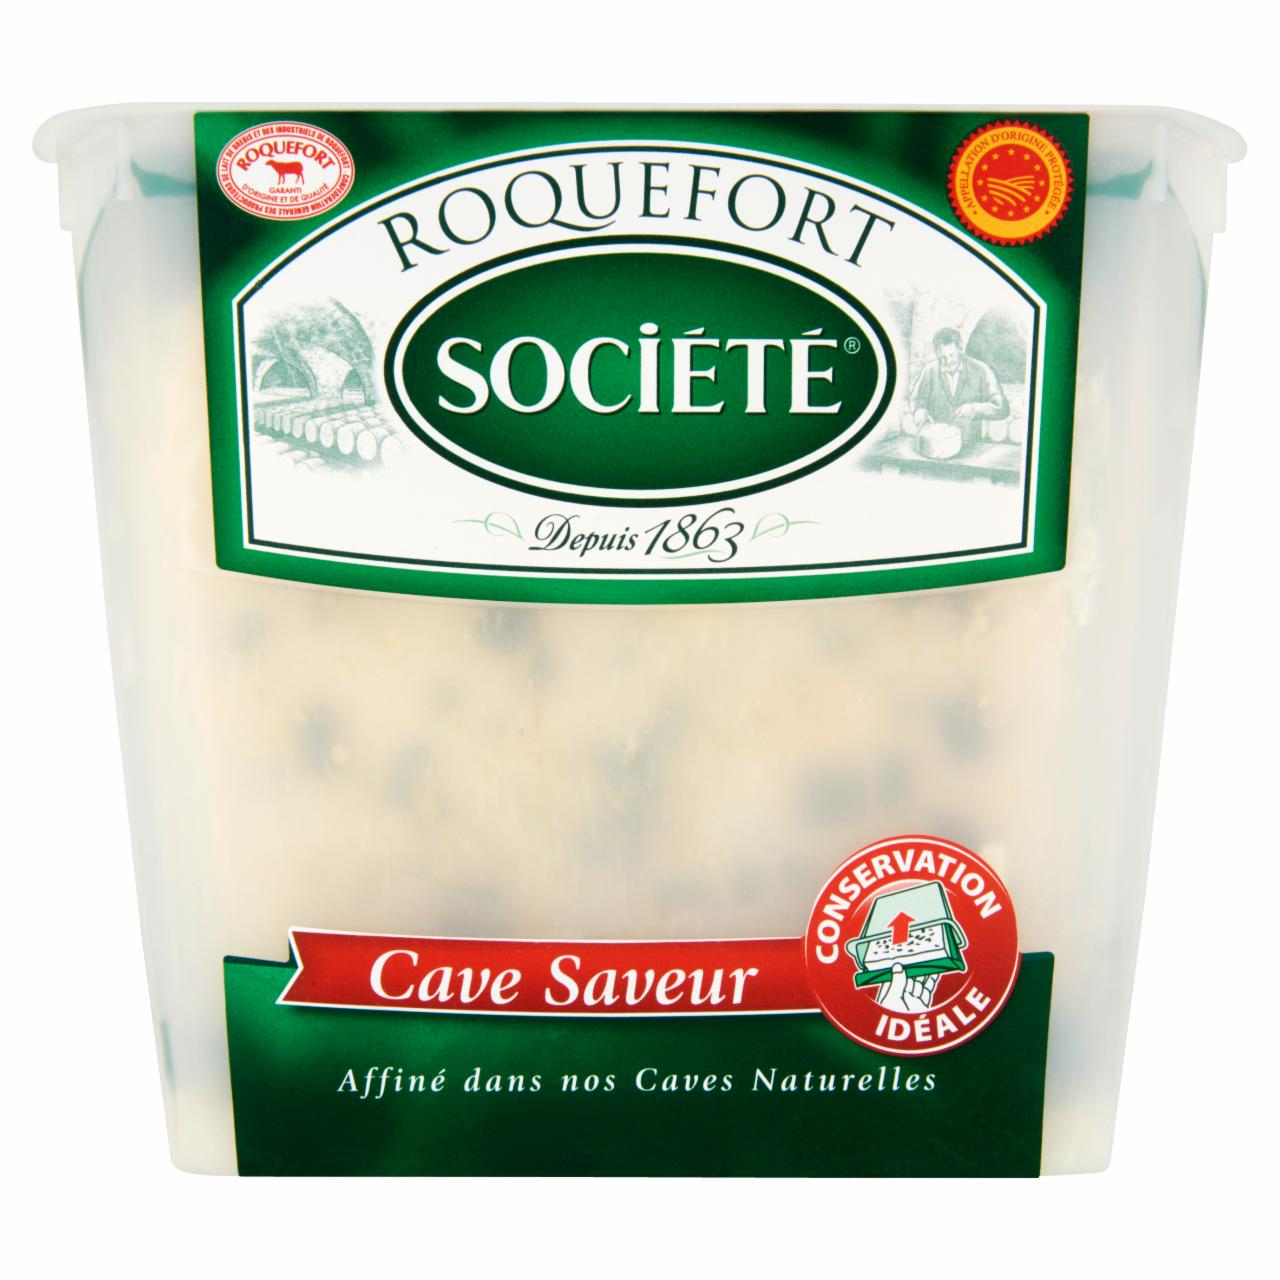 Képek - Société Roquefort nemespenésszel érlelt zsíros lágy juhsajt 150 g